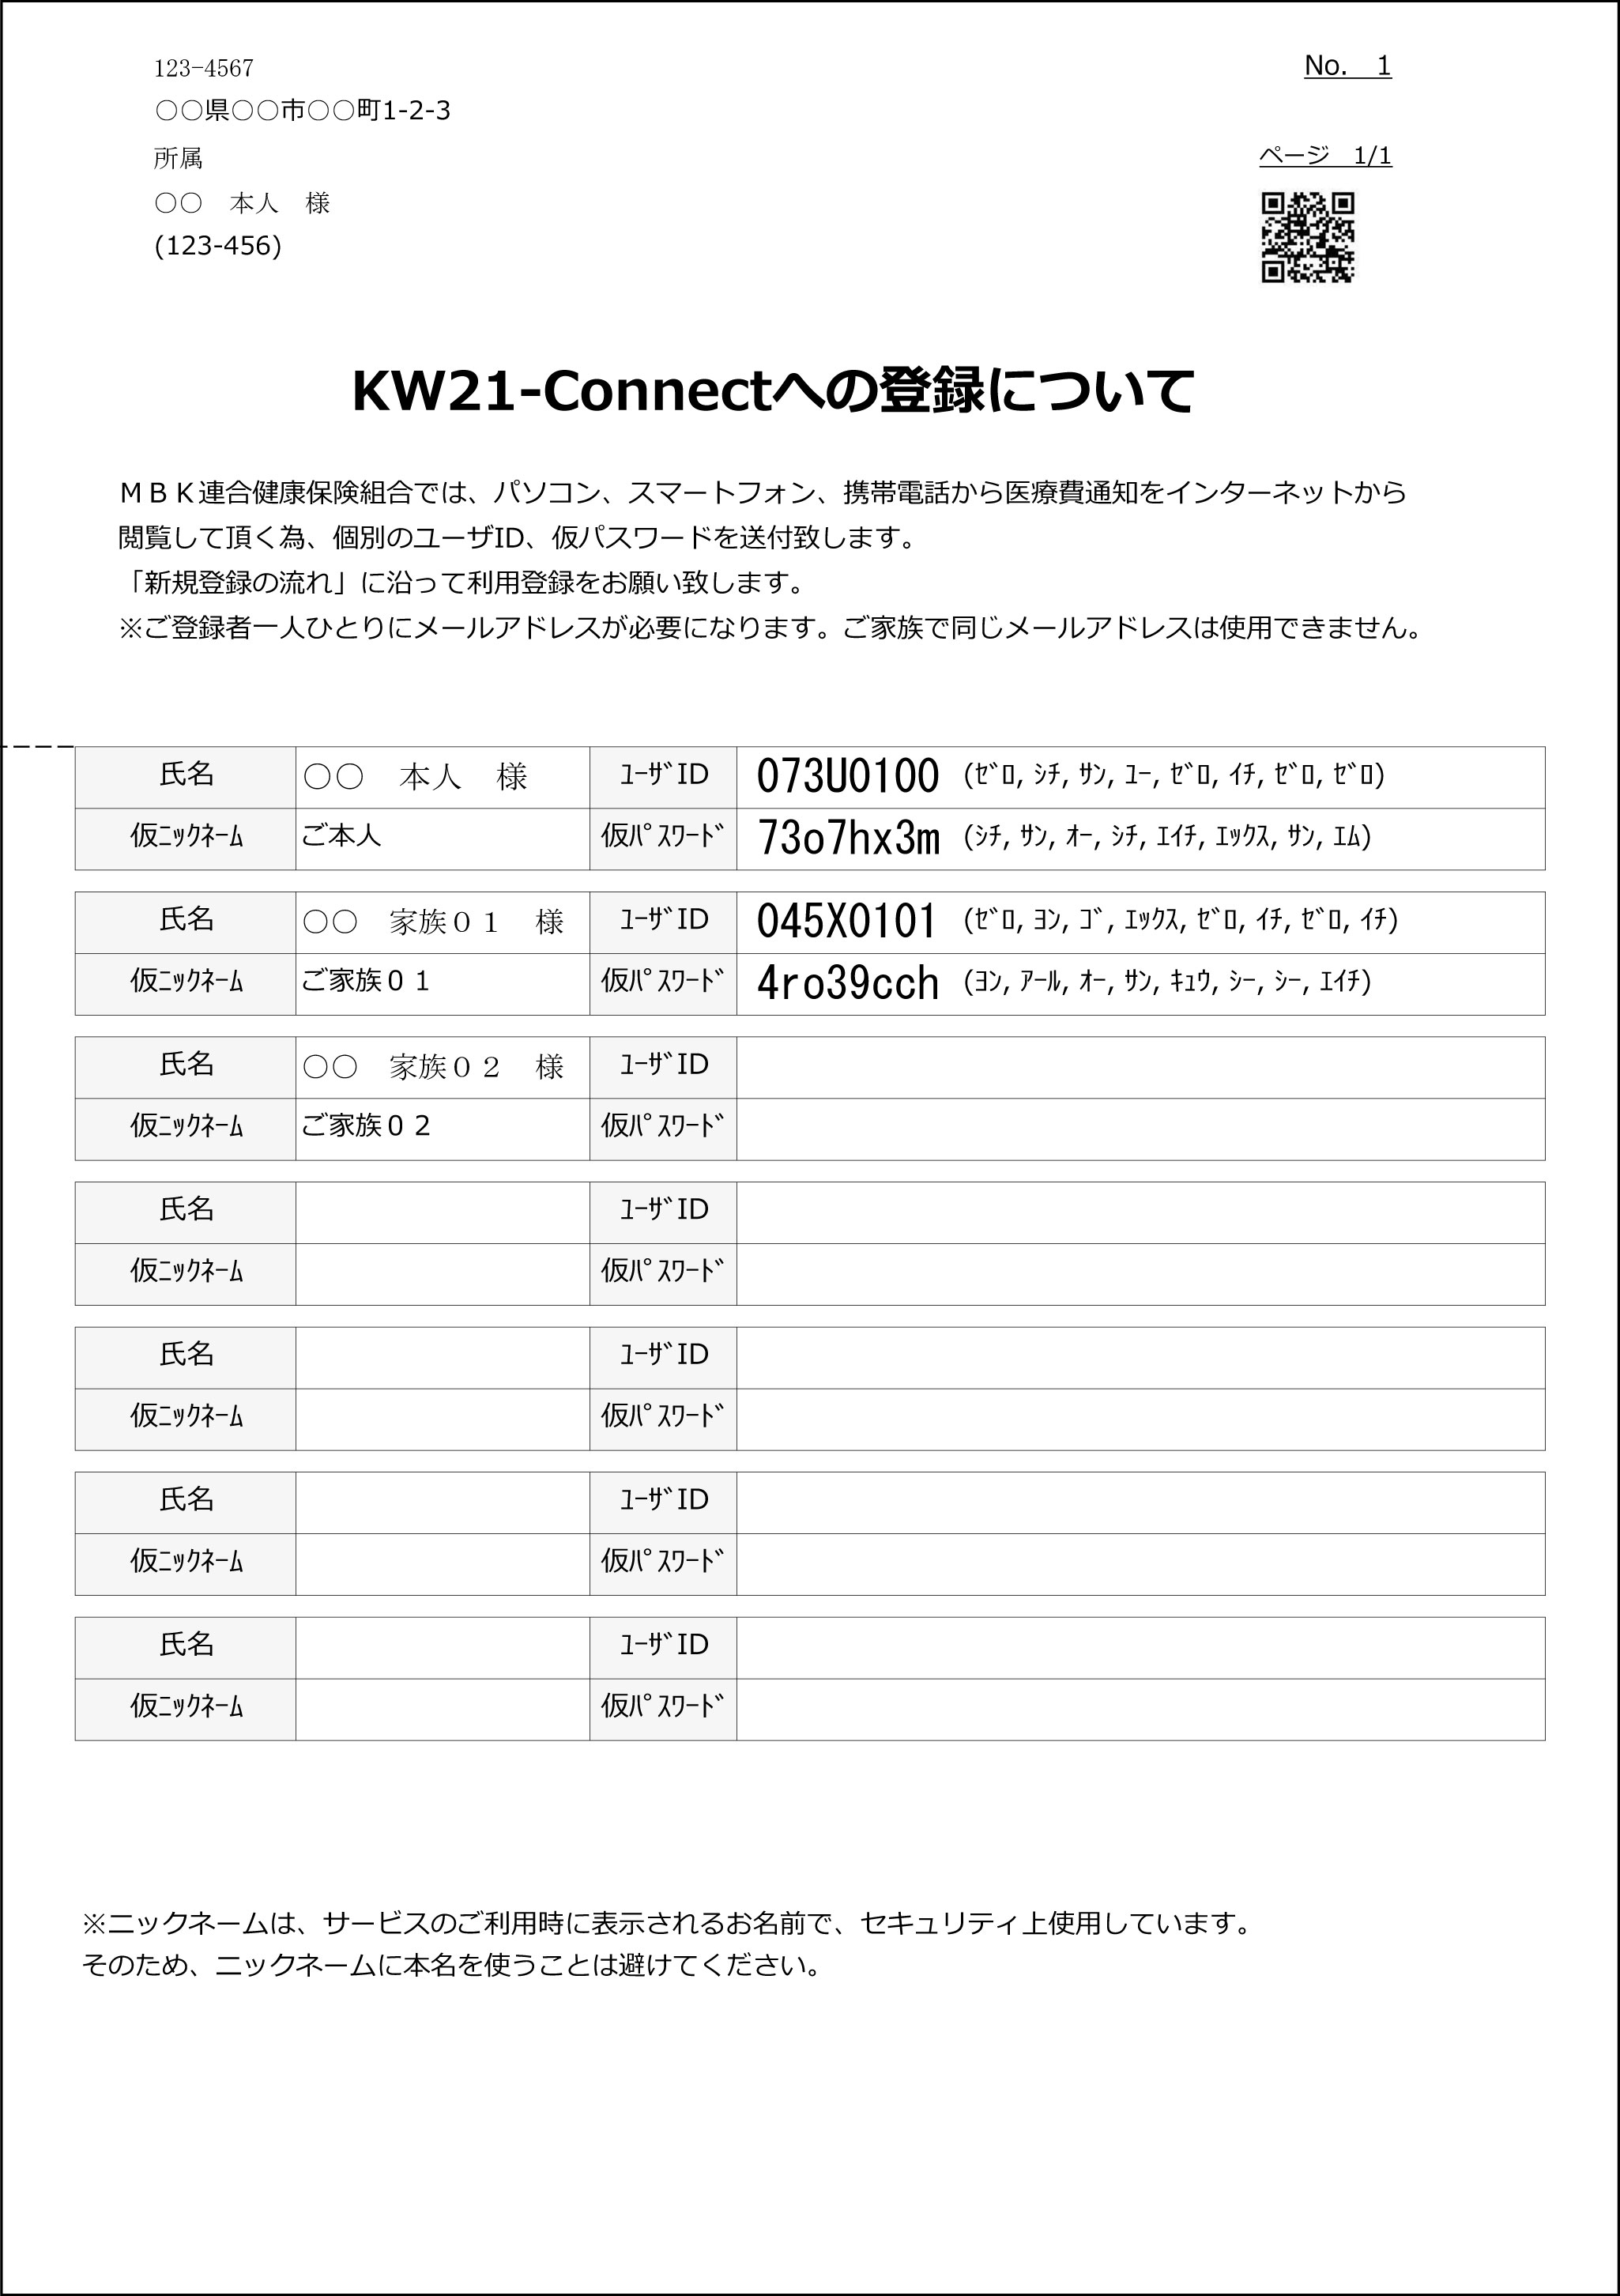 KW21-Connectへの登録について